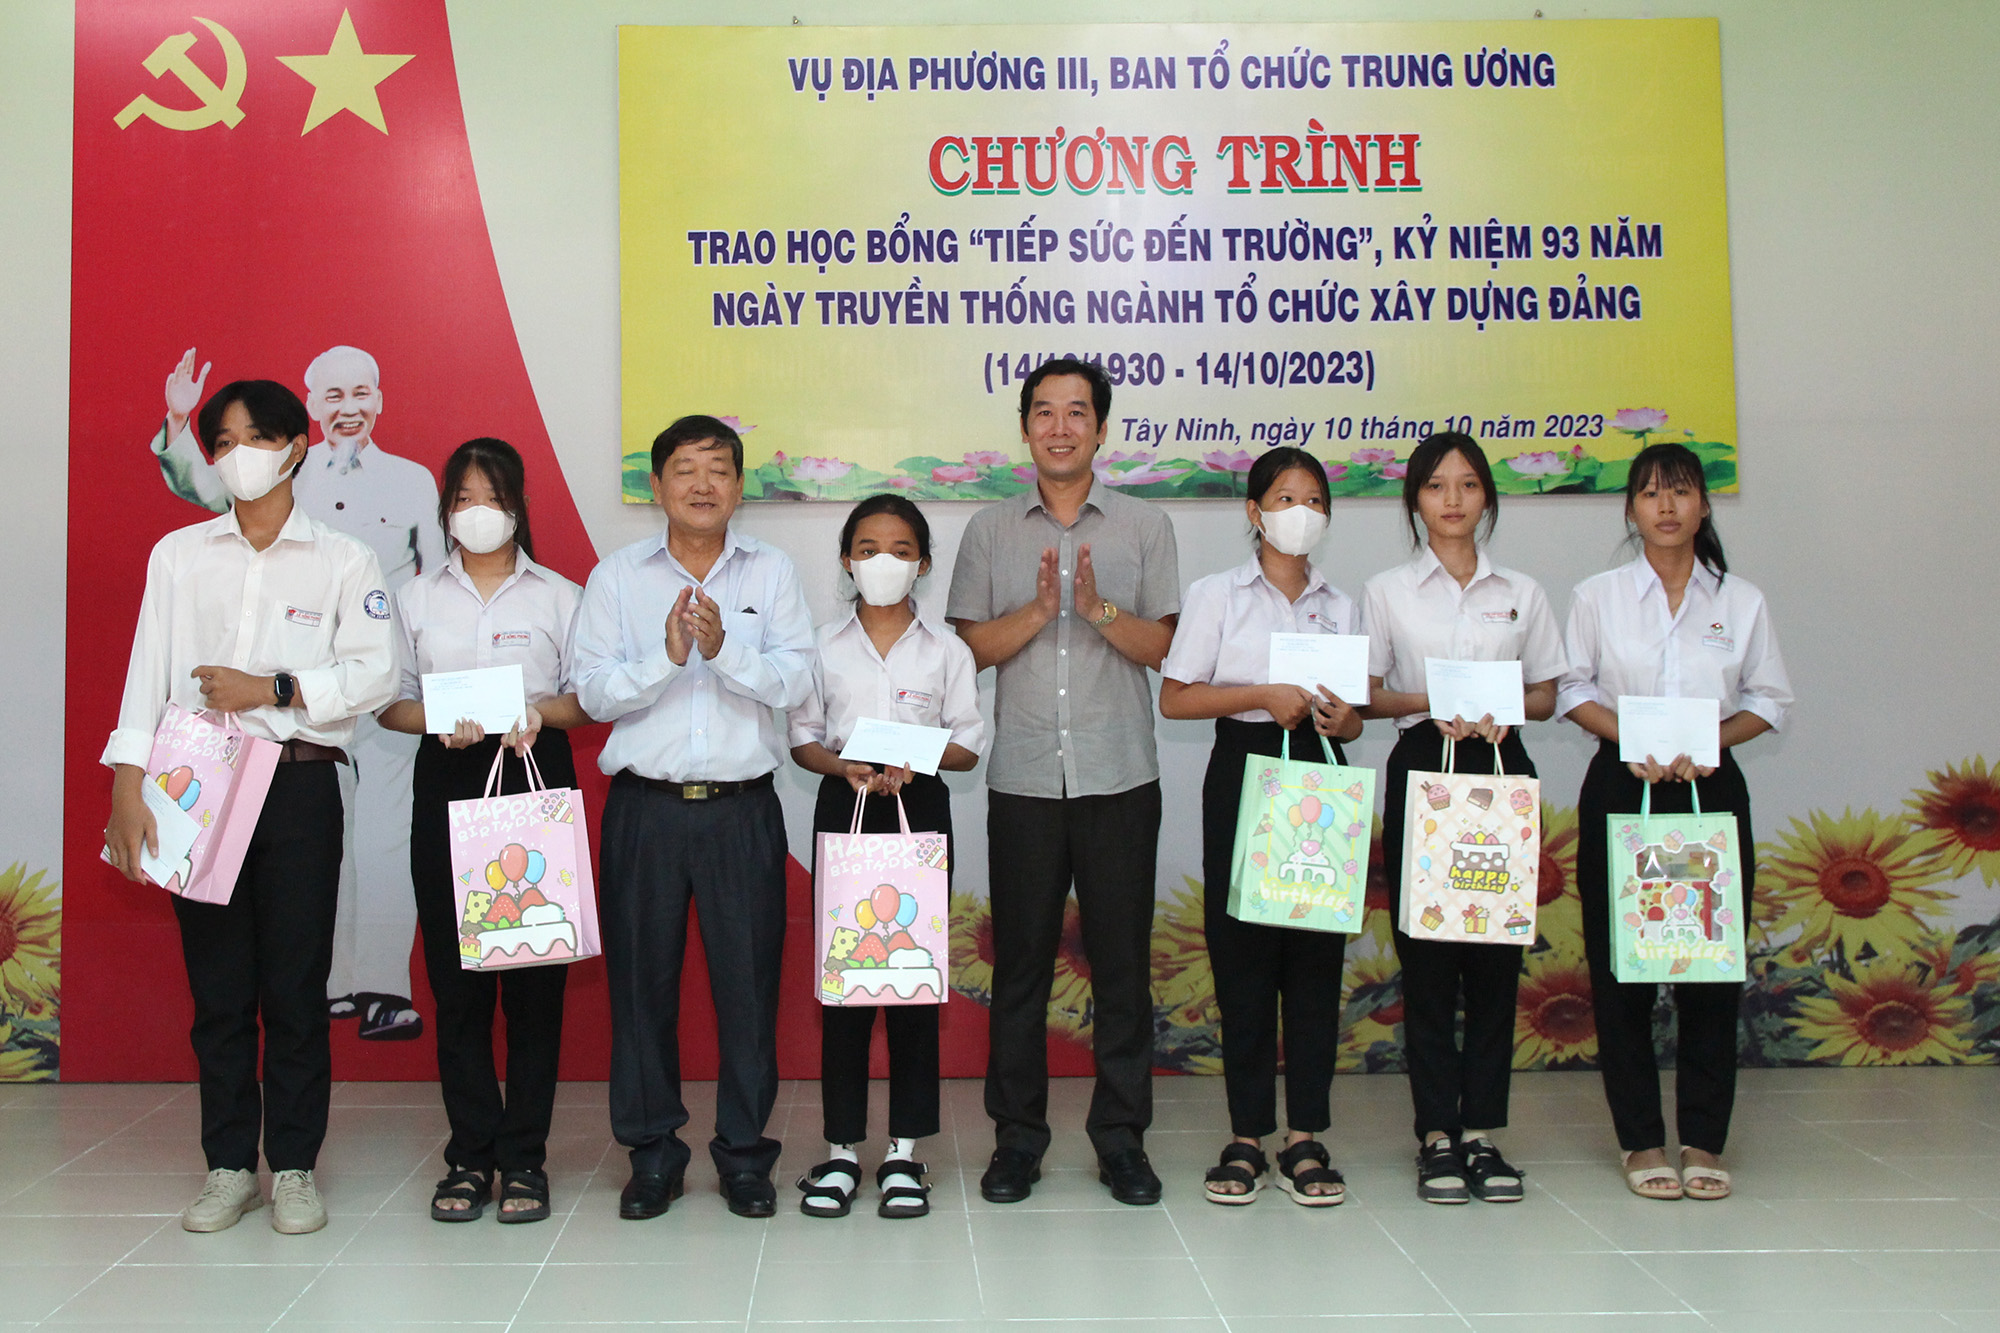 Lãnh đạo, cán bộ Vụ Địa phương III tại buổi lễ trao học học bổng “Tiếp sức đến trường” tại huyện Châu Thành, tỉnh Tây Ninh (Ảnh: H.Hào).